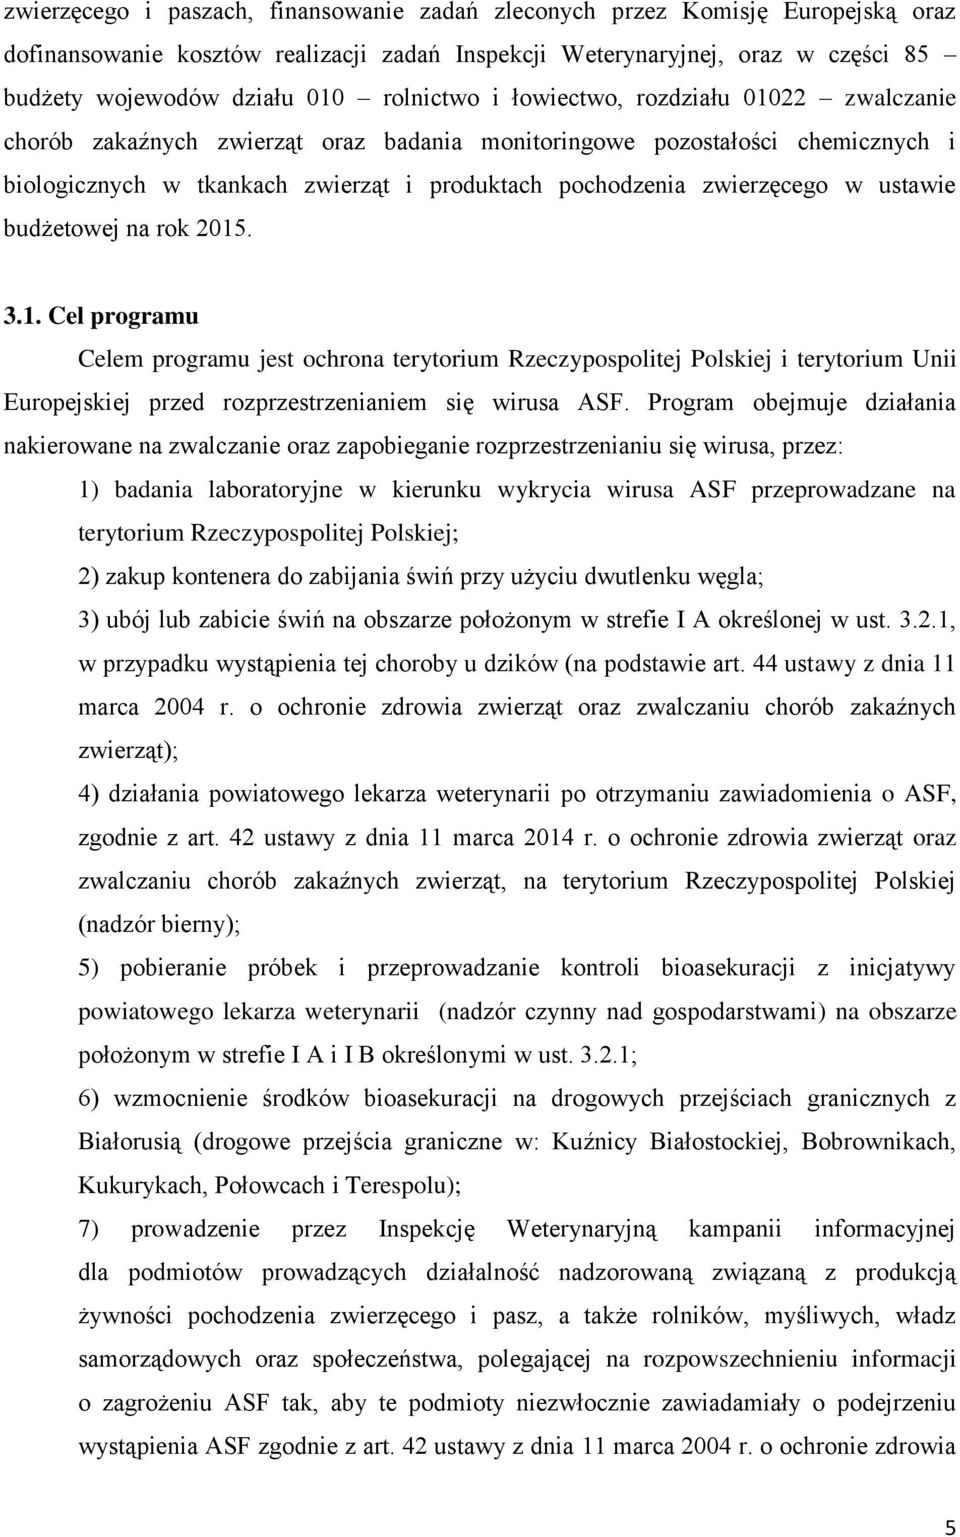 zwierzęcego w ustawie budżetowej na rok 2015. 3.1. Cel programu Celem programu jest ochrona terytorium Rzeczypospolitej Polskiej i terytorium Unii Europejskiej przed rozprzestrzenianiem się wirusa ASF.